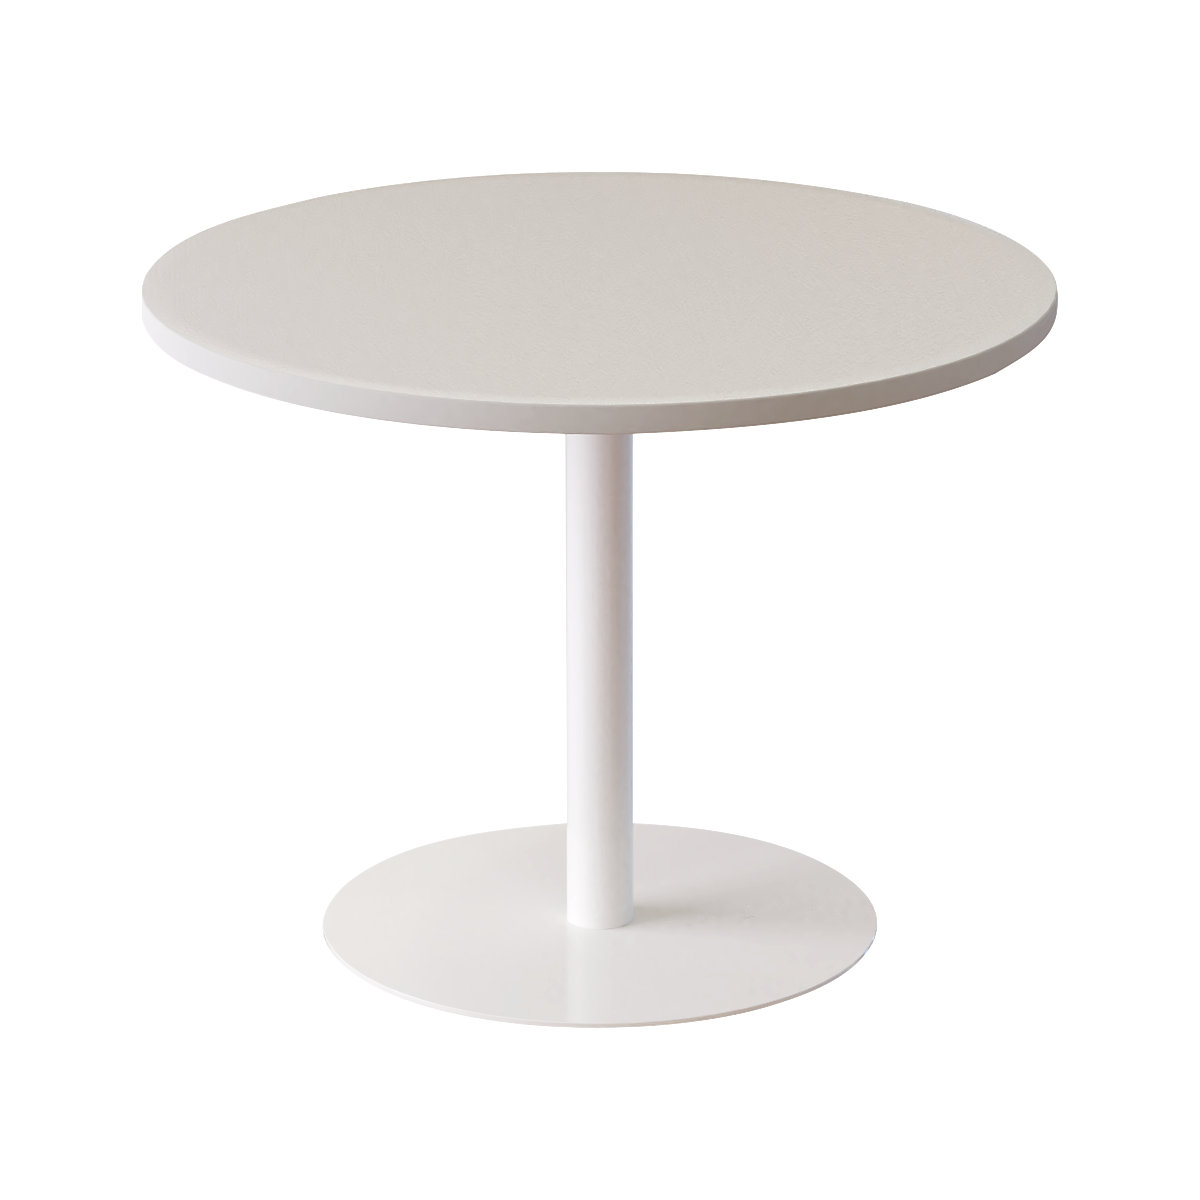 Lounge-Tisch, rund, Ø 800 mm, weiß